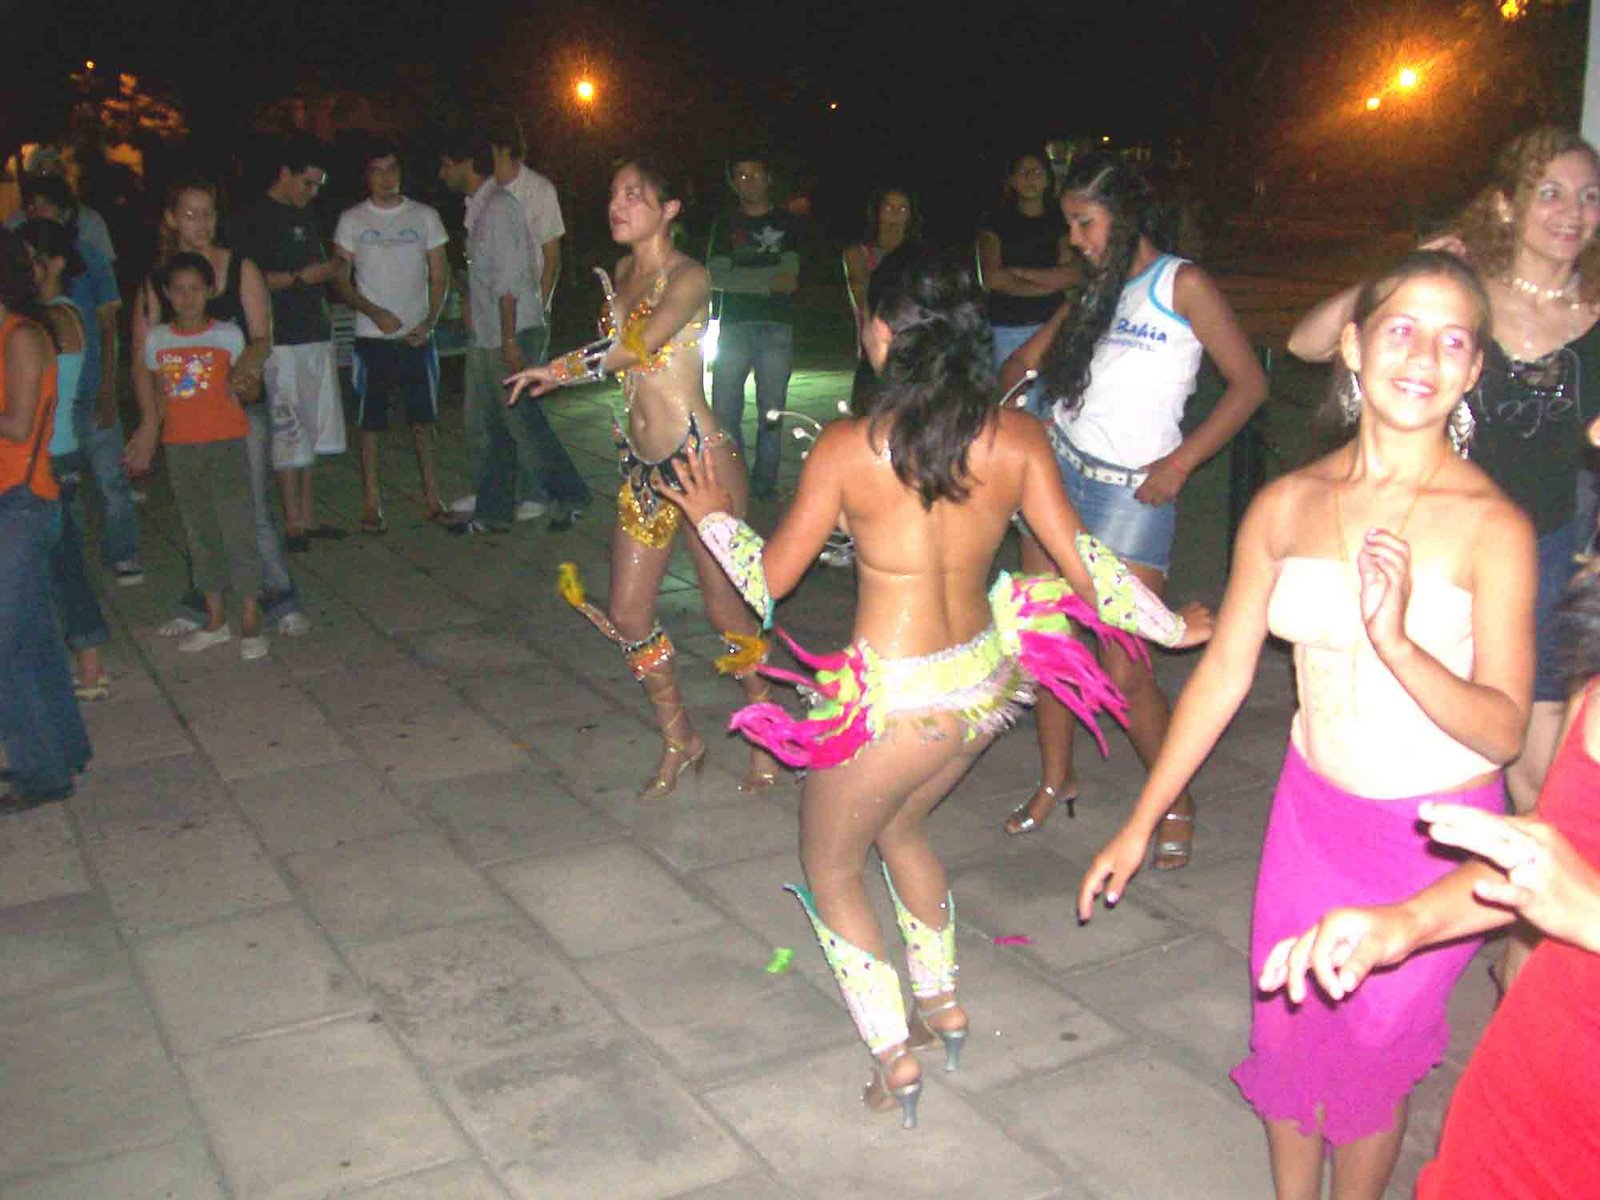 [lanzamiento+del+Carnaval+goyano+2008-+Bellas+bailarinas+y+batucadas+en+plaza+Mitre.jpg]